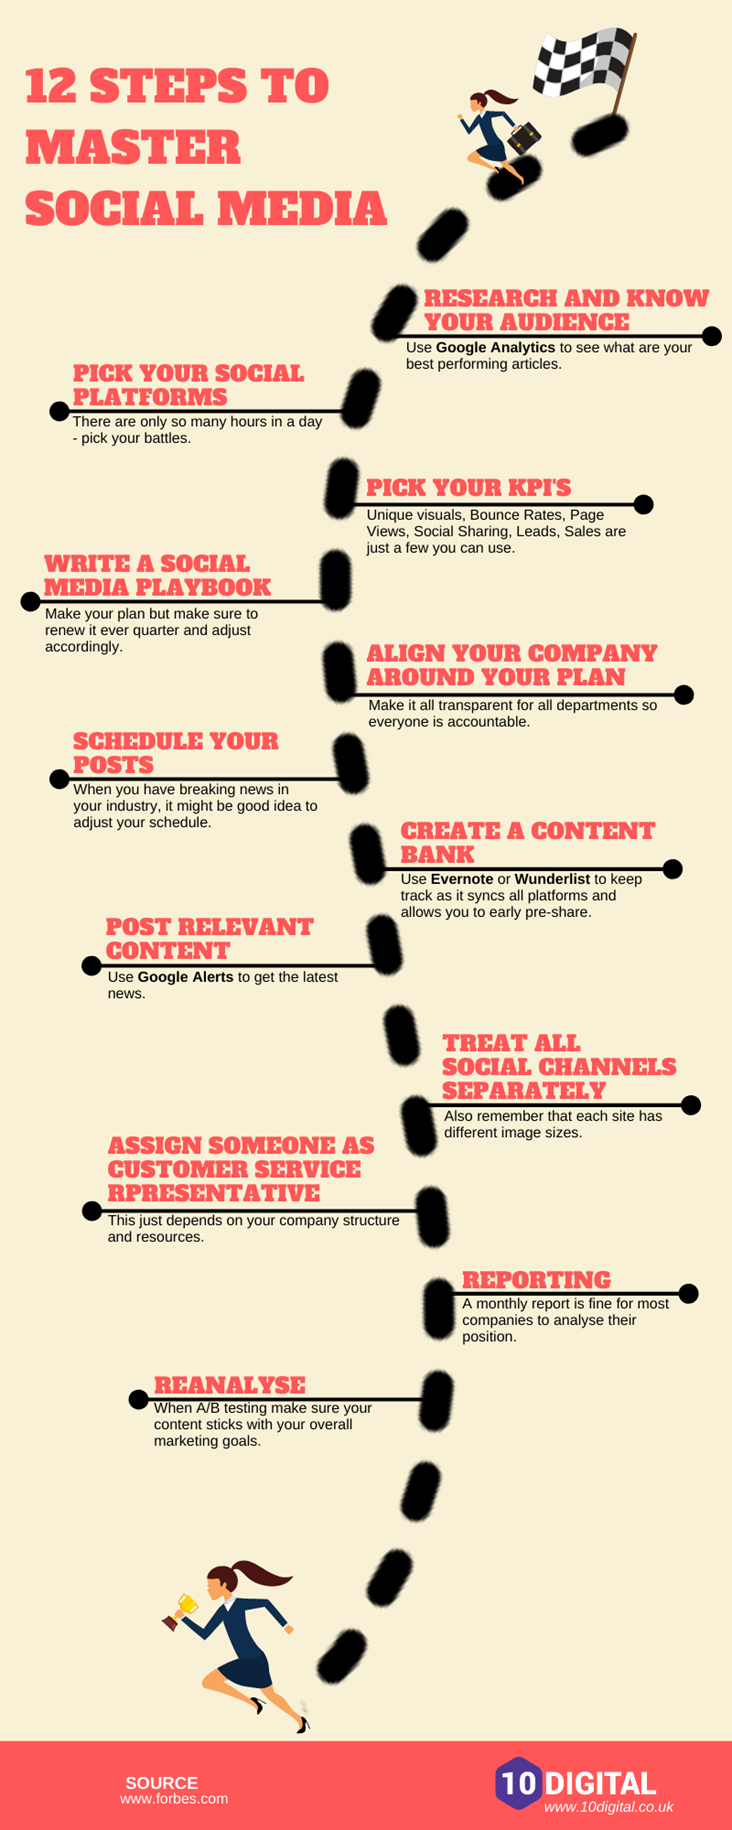 12 steps social media marketing